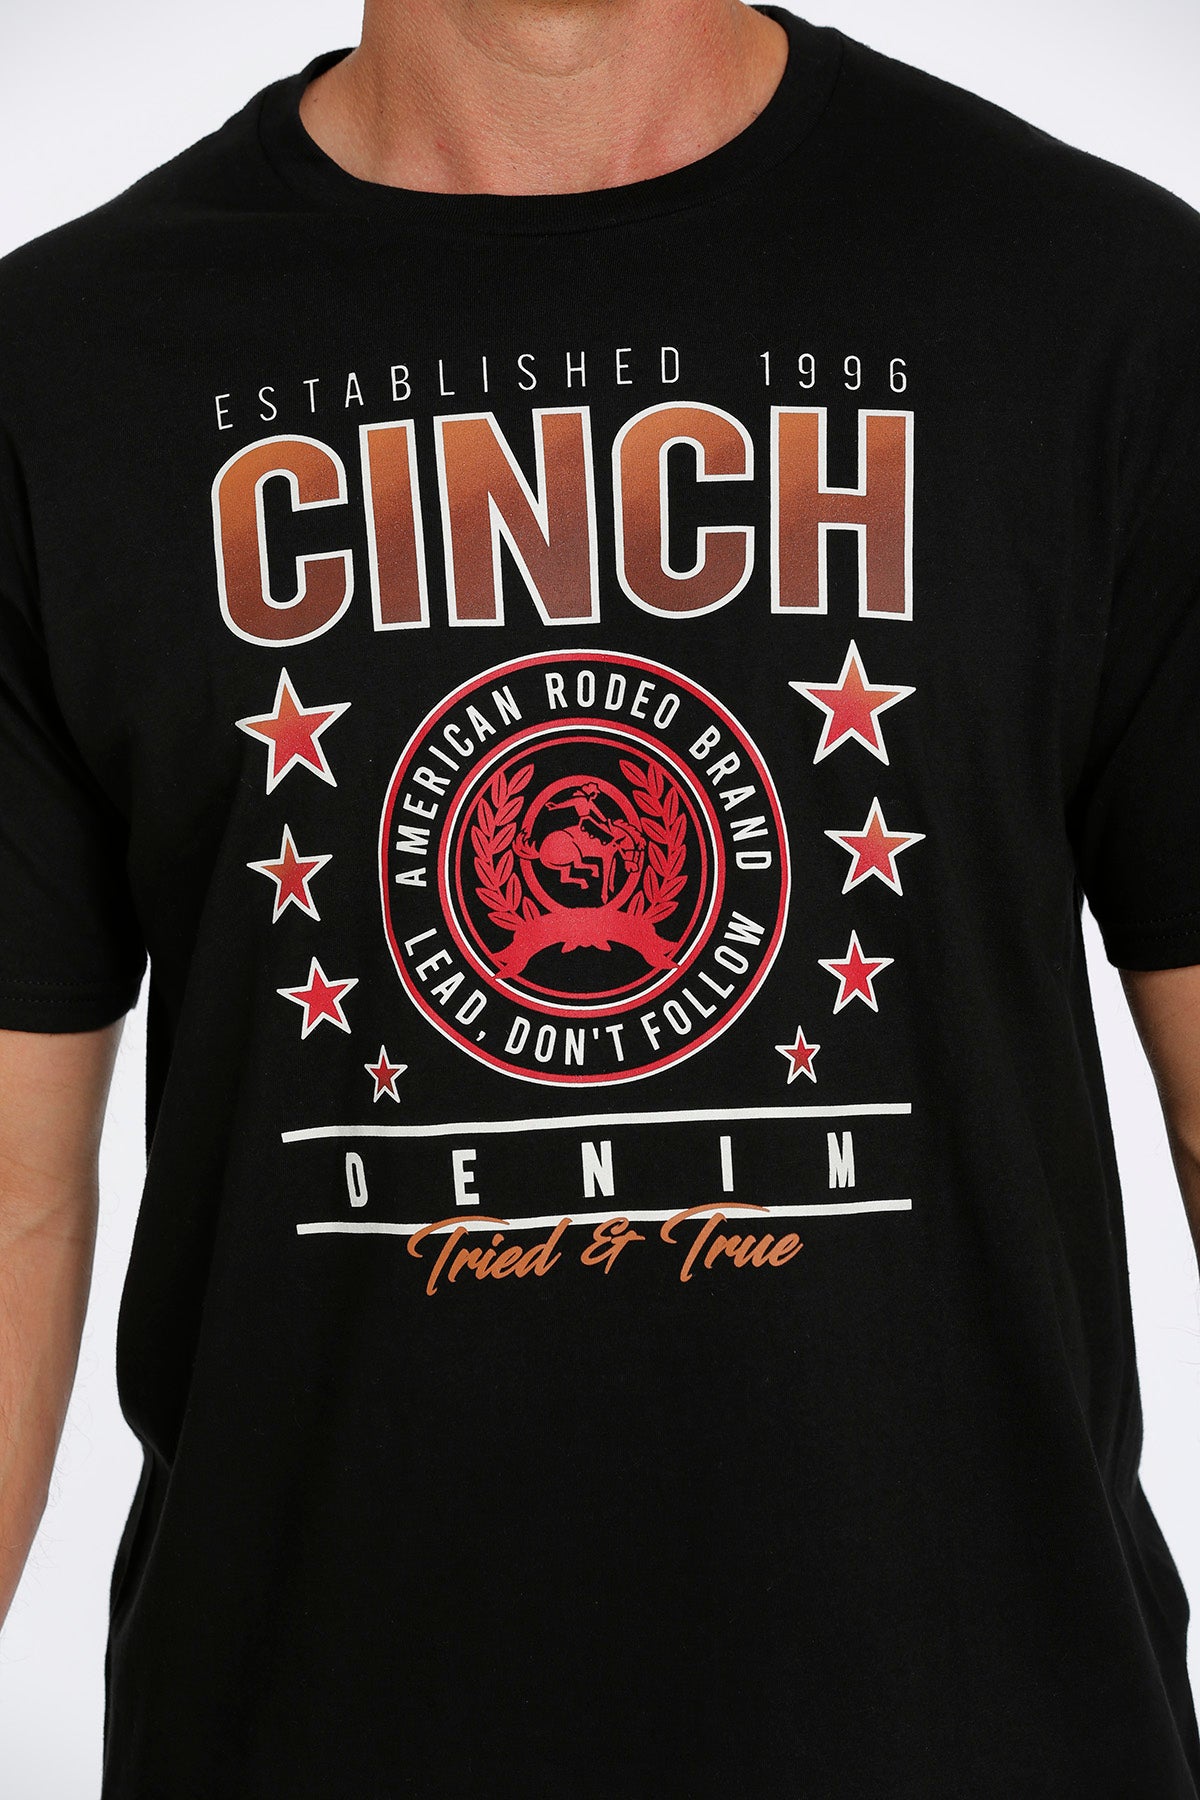 Cinch Men’s logo tee